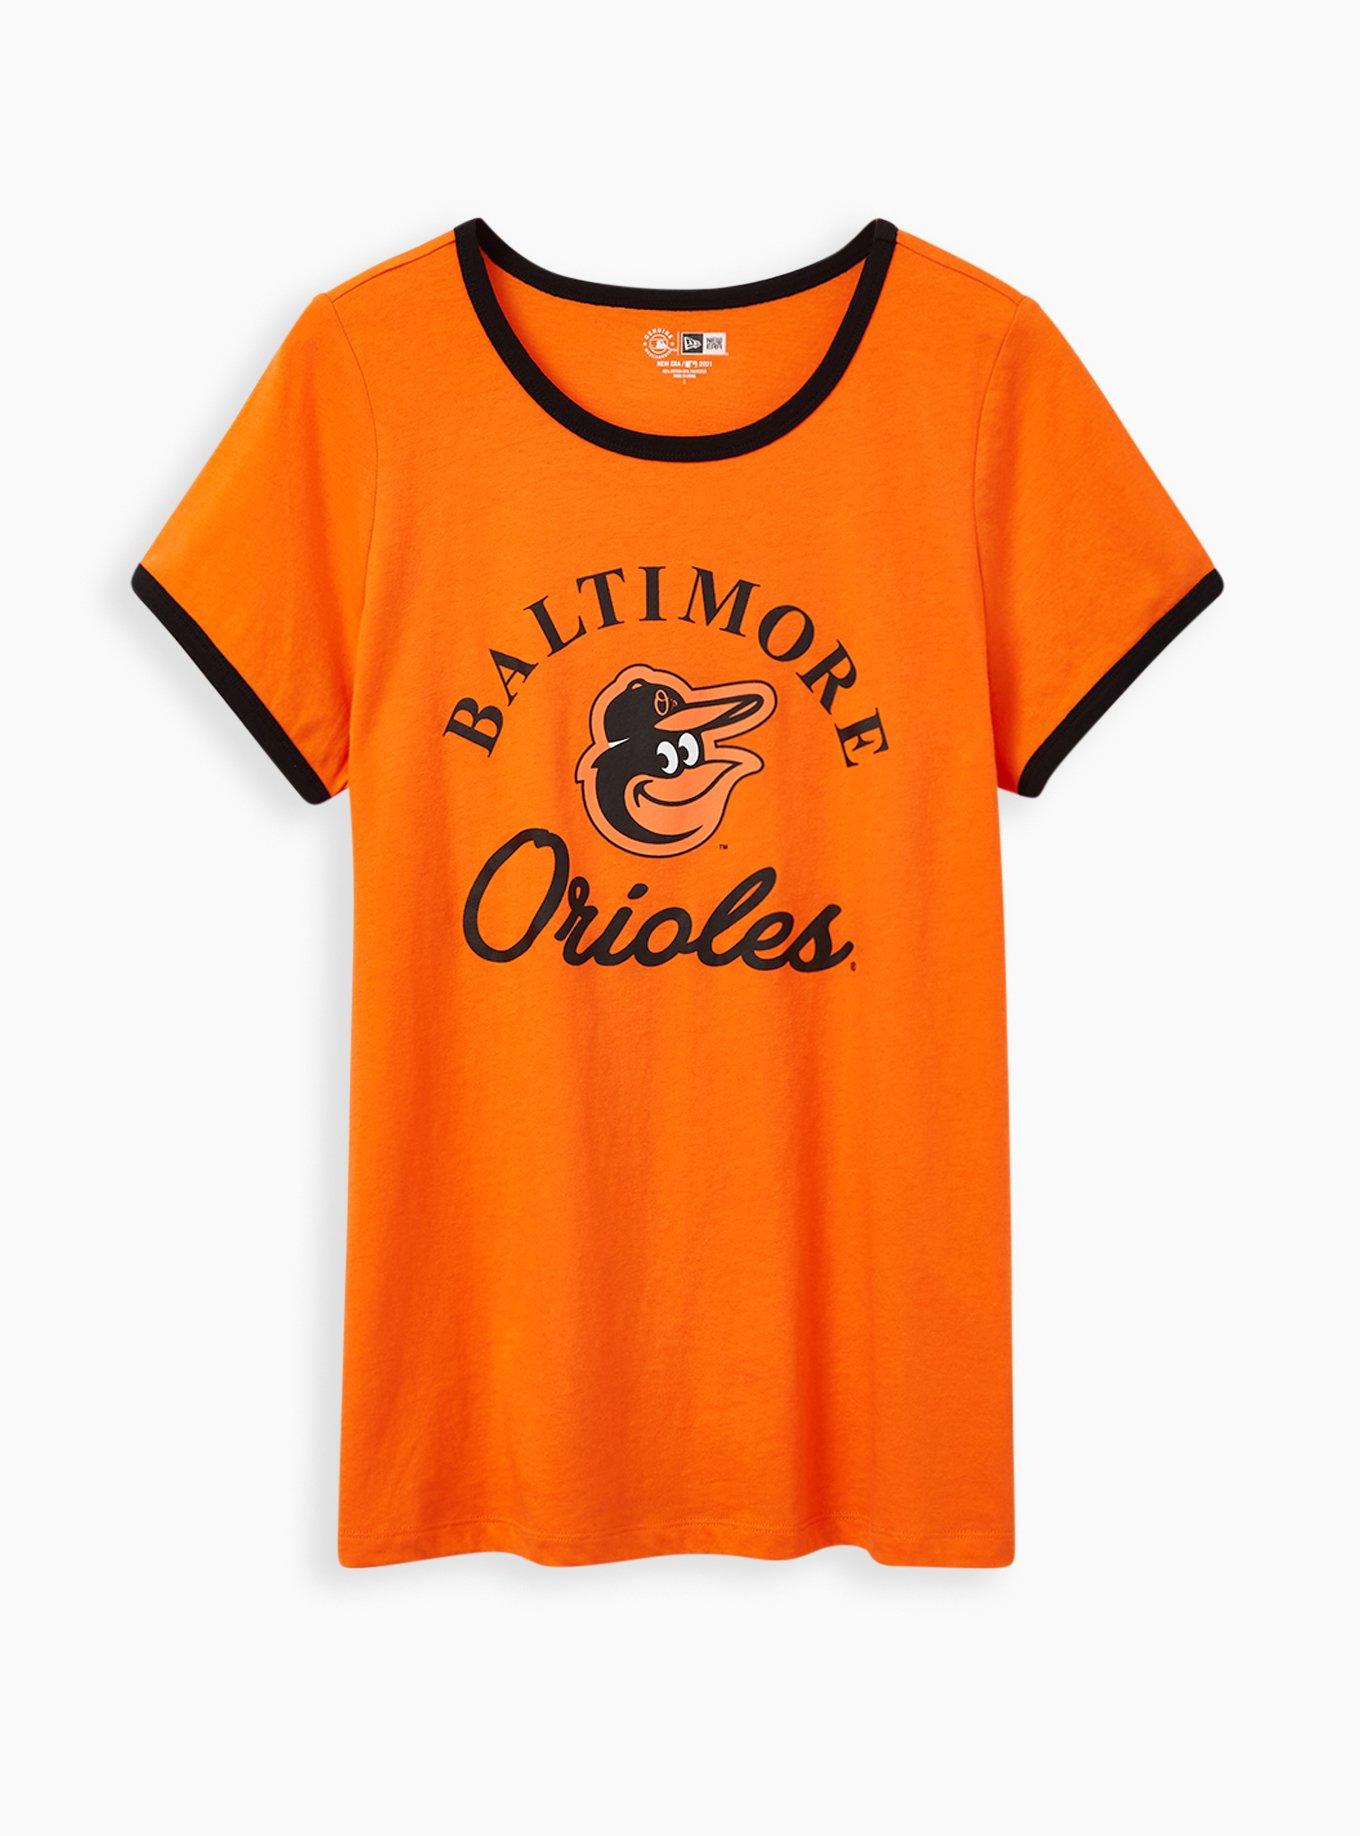 Plus Size - Classic Fit Ringer Tee - MLB Baltimore Orioles Orange